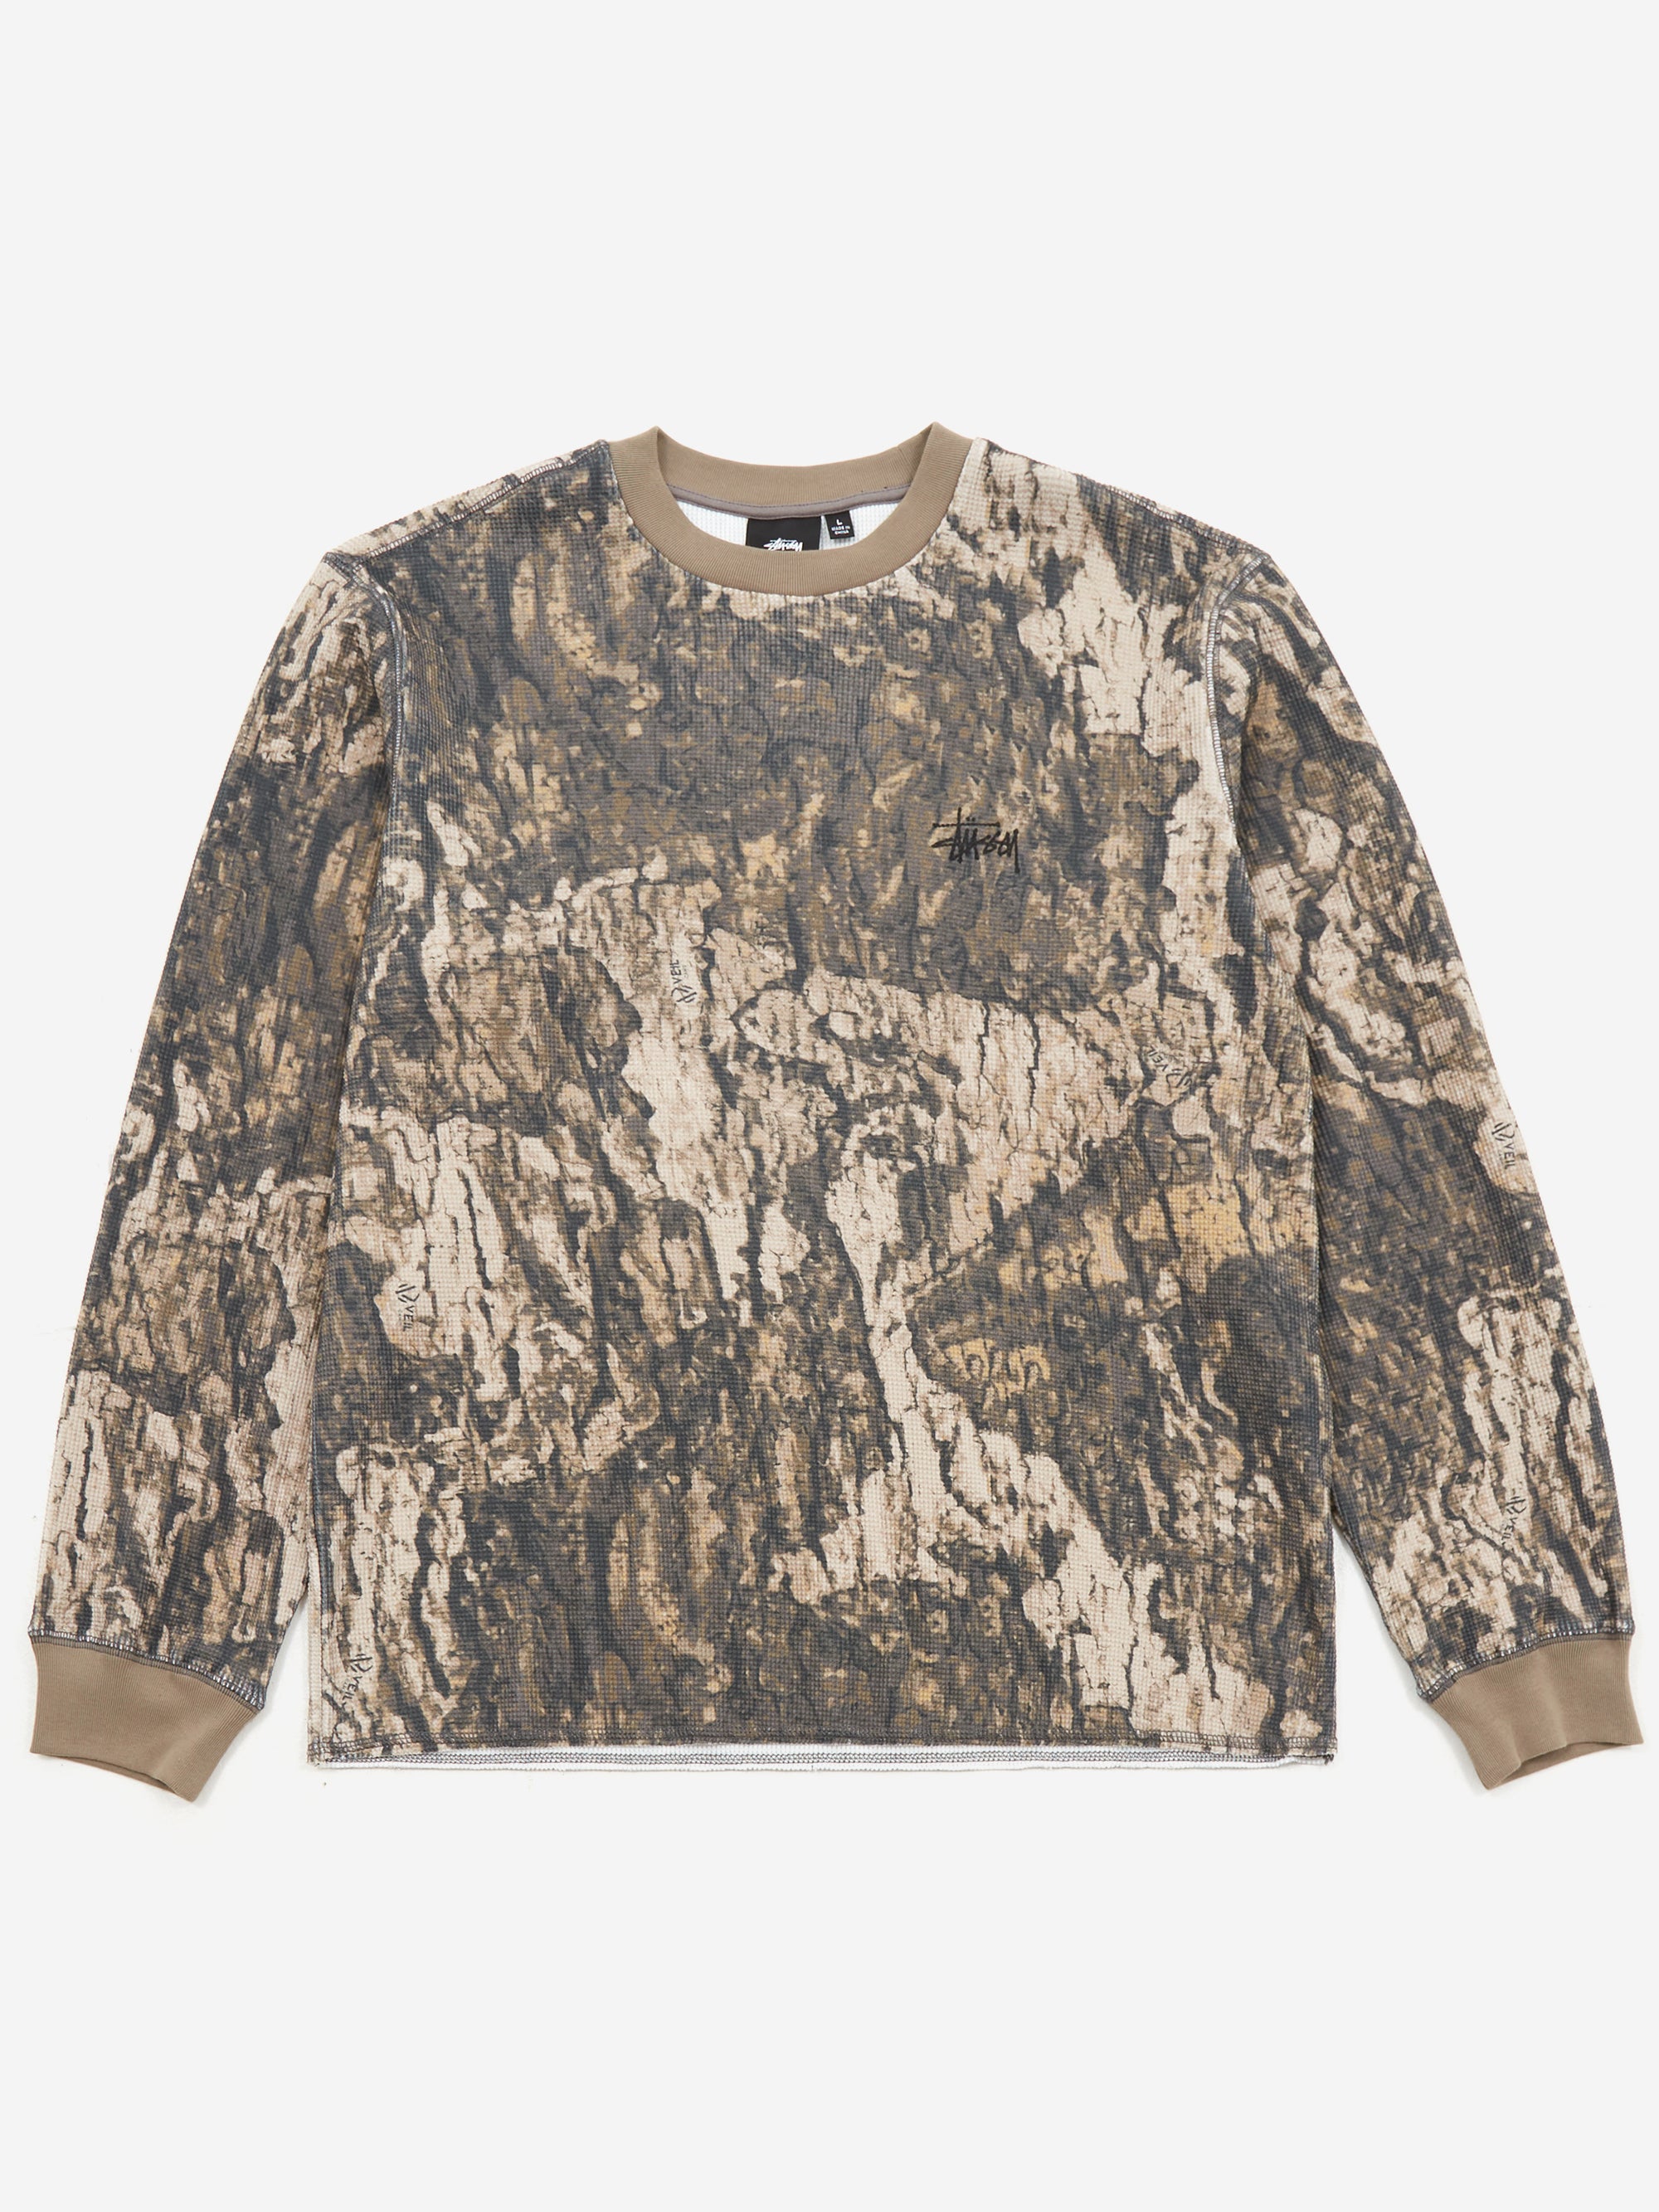 Natural Reflections Acid-Wash Thermal Long-Sleeve Shirt Jacket for